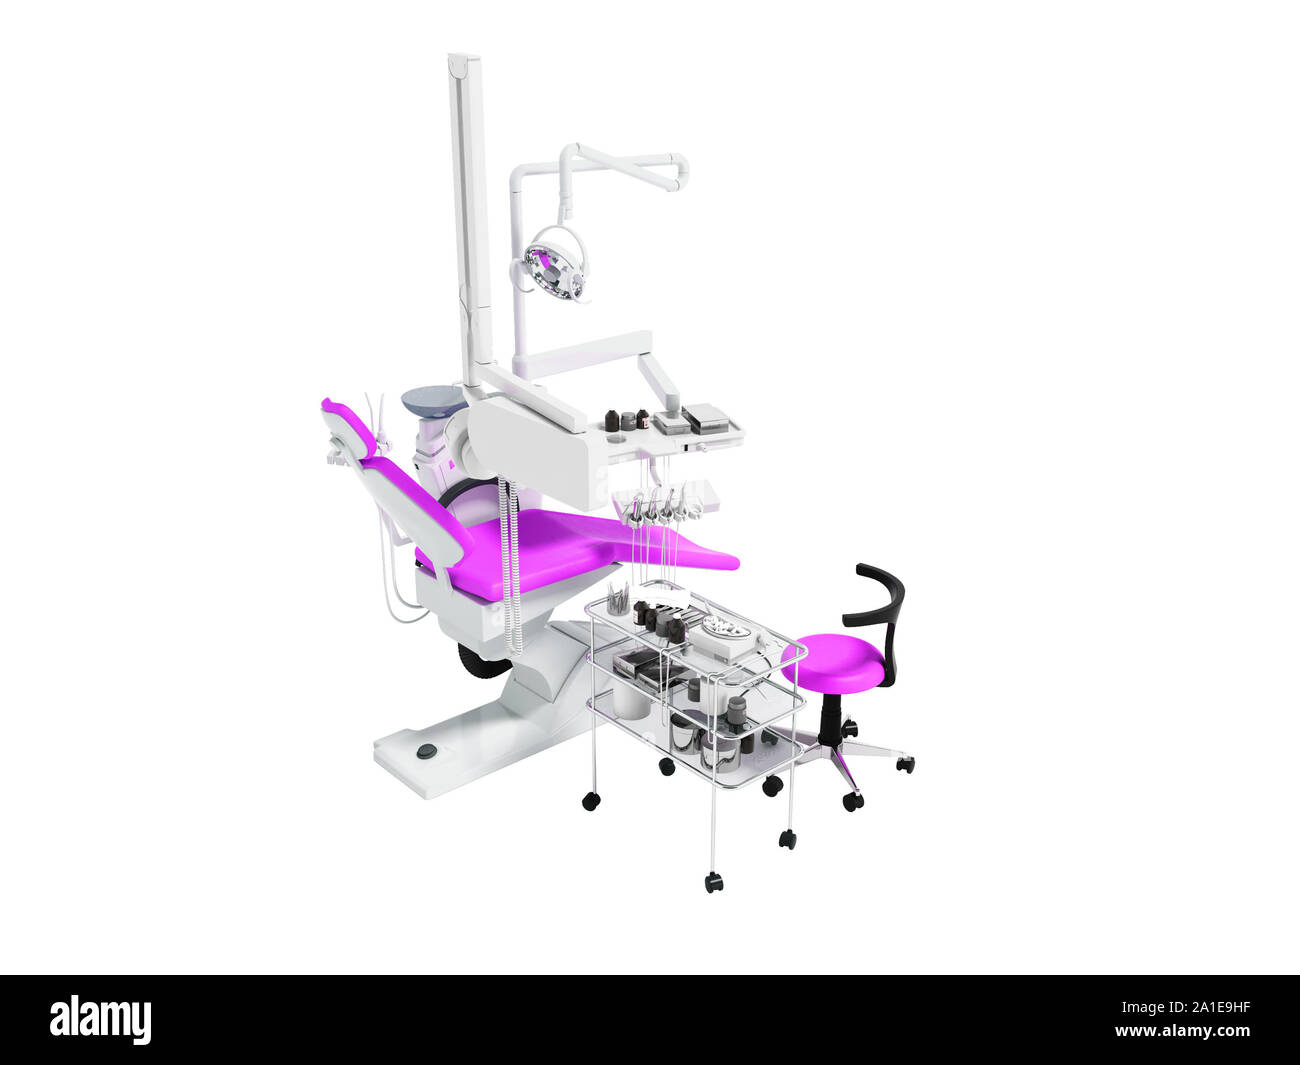 Fauteuil dentaire avec éclairage à partir de la tables de chevet avec des outils pour le traitement et l'enlèvement de dents avec un fauteuil pour travailler avec inserts blanc rose 3D Banque D'Images